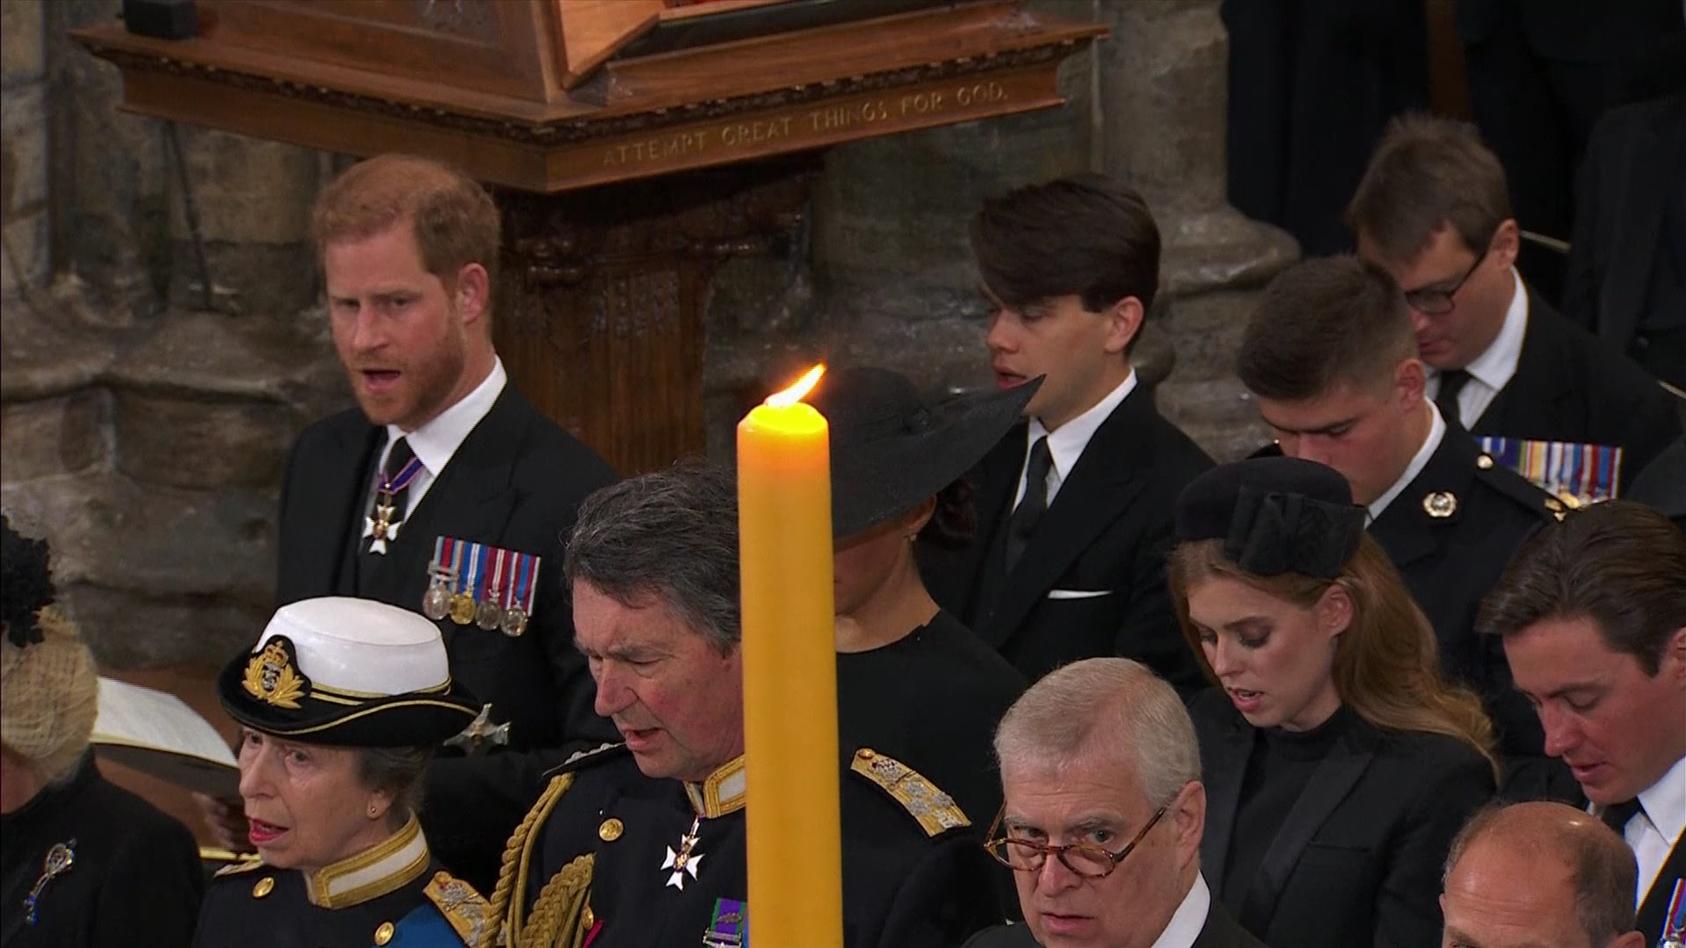 Herzogin Meghan wurde auf den TV-Bildern während der Trauerfeier  in Westminster Abbey von einer Kerze verdeckt. Fans vermuten dahinter eine Verschwörung gegen die 41-Jährige.